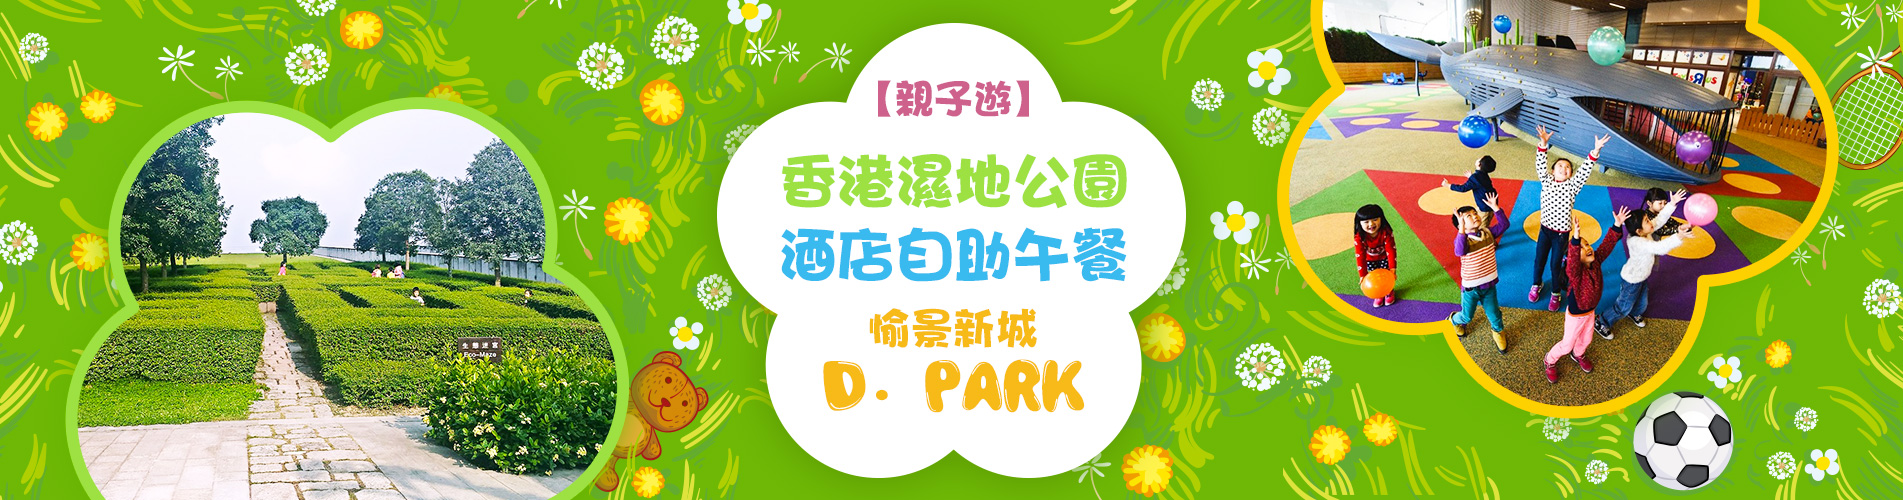 香港濕地公園、酒店自助午餐、D．Park親子生態 1天遊